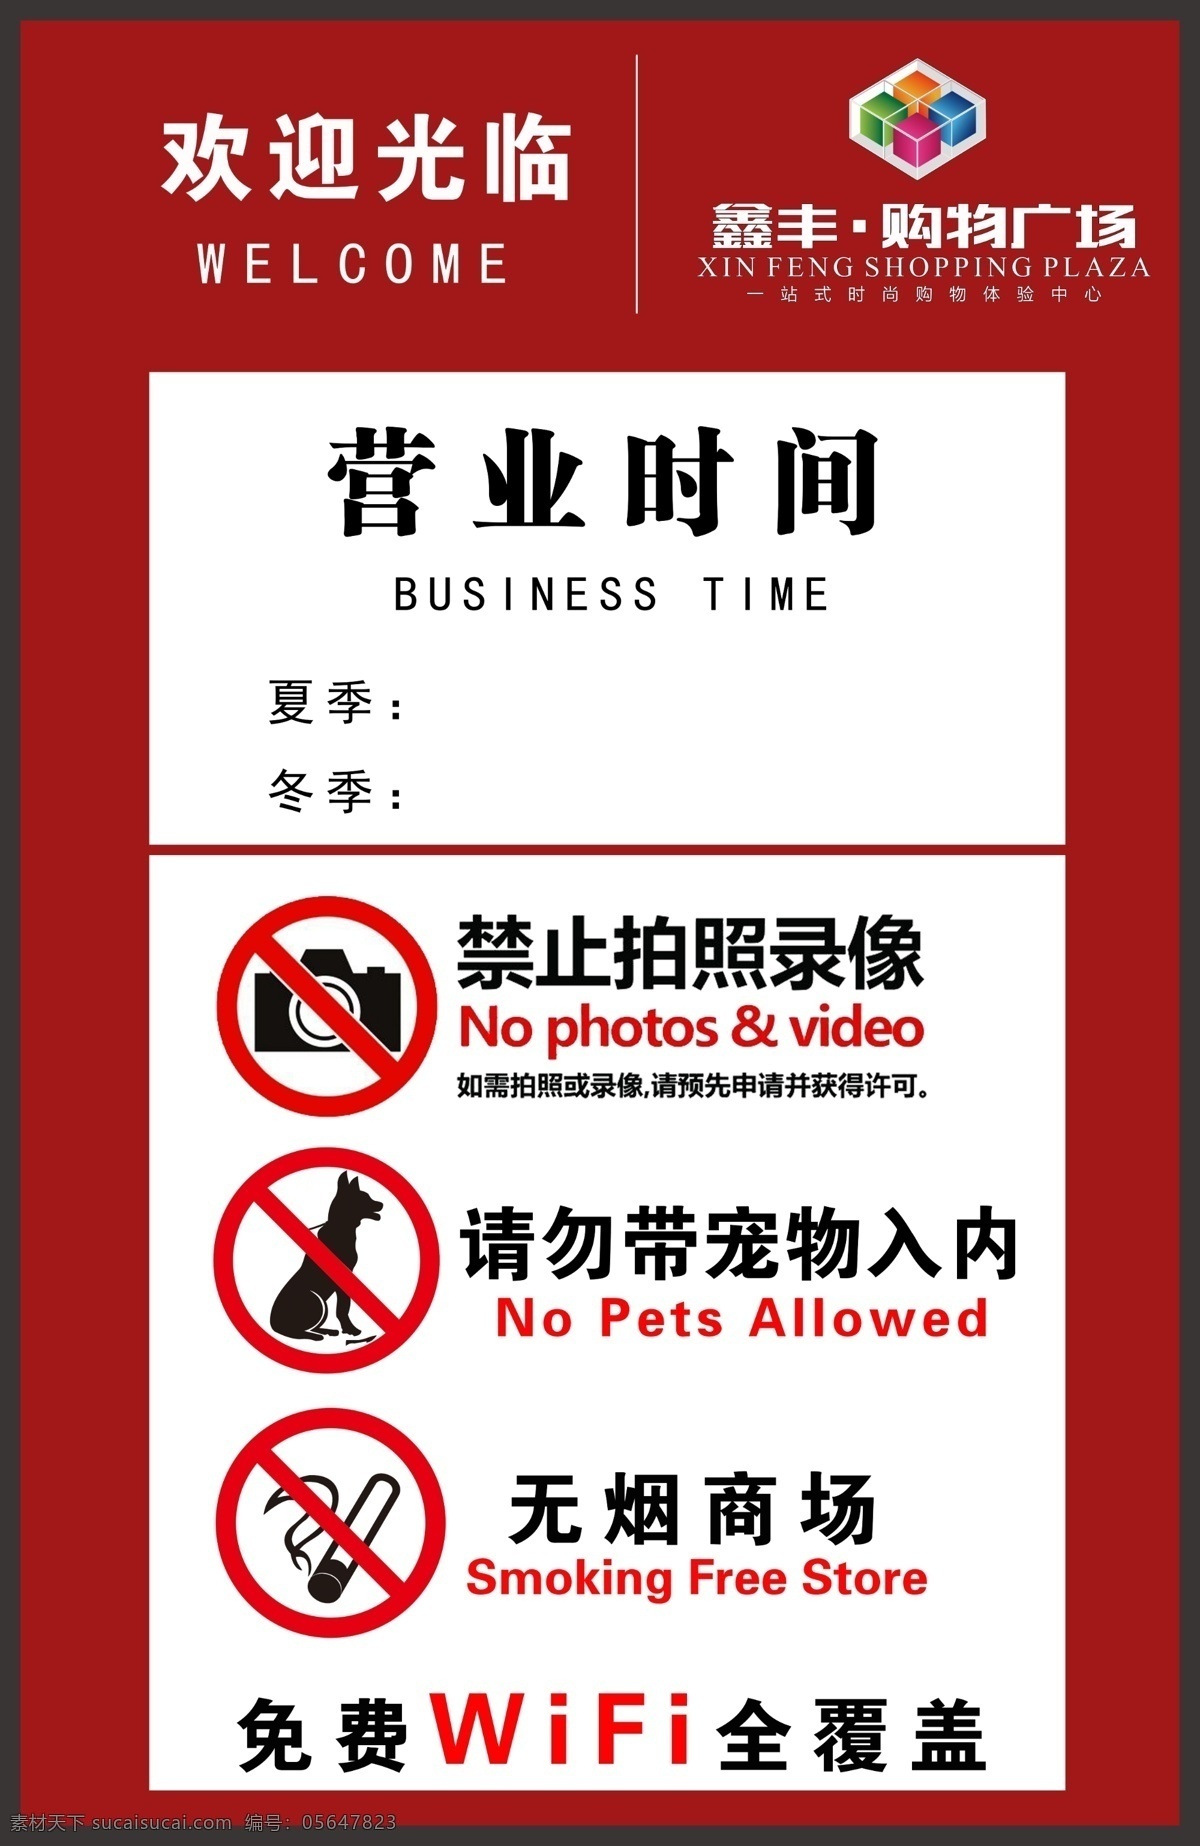 商场警示图 商场 营业时间 禁止吸烟 禁止拍照 禁止带宠物 警示图 标志图标 公共标识标志